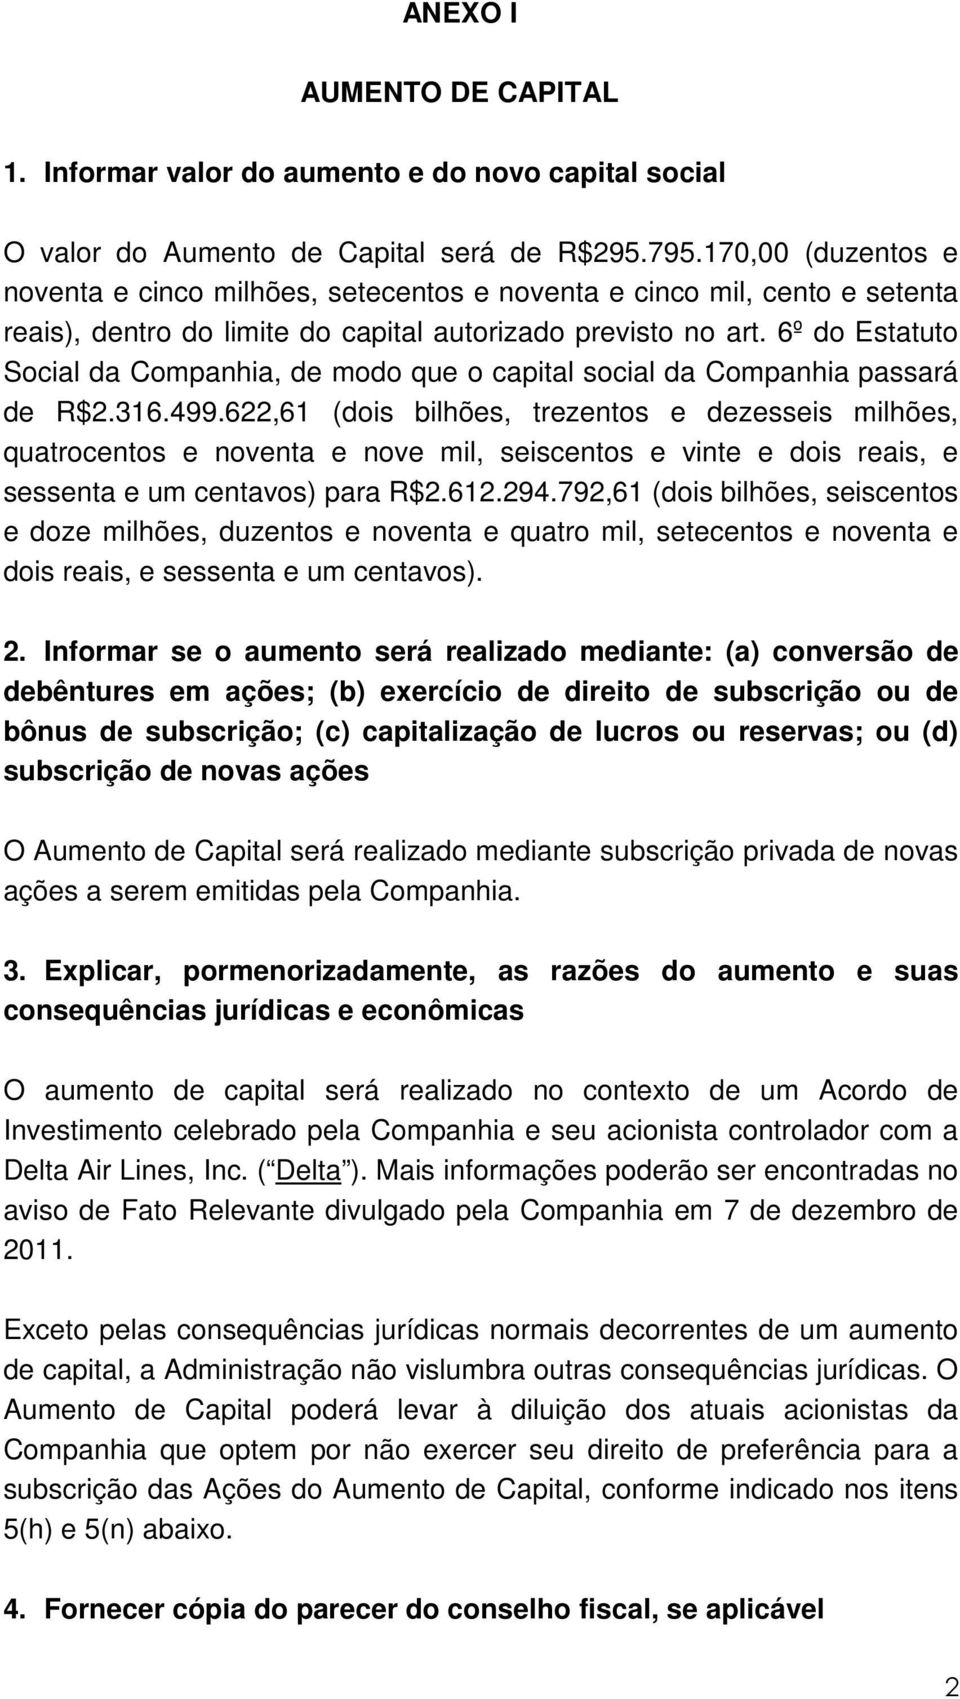 6º do Estatuto Social da Companhia, de modo que o capital social da Companhia passará de R$2.316.499.